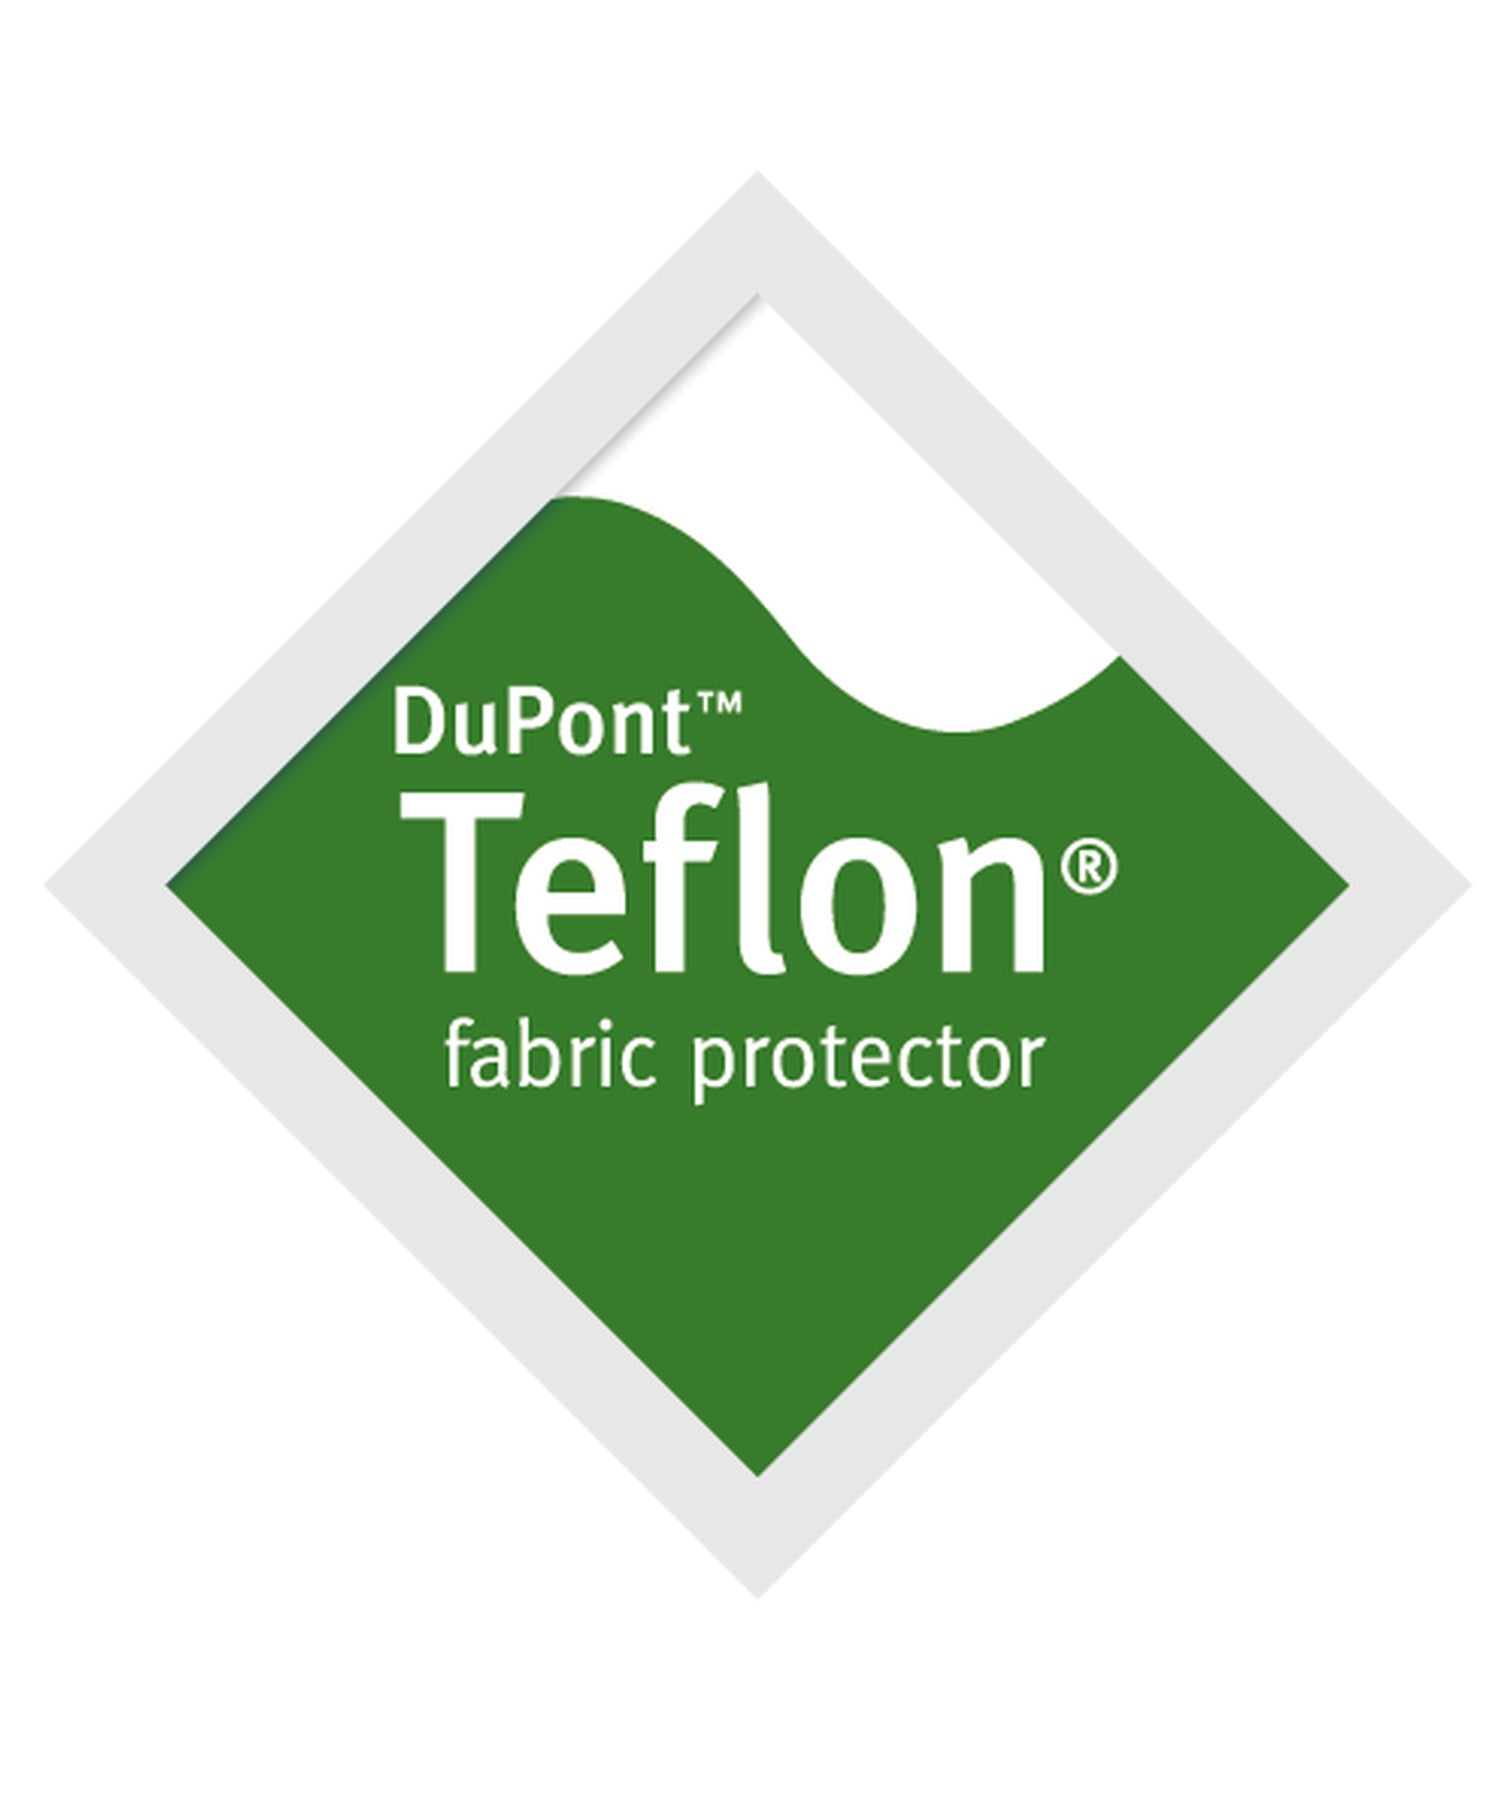 logo del trattamento Teflon di dupont per la protezione dei tessuti maxpedition